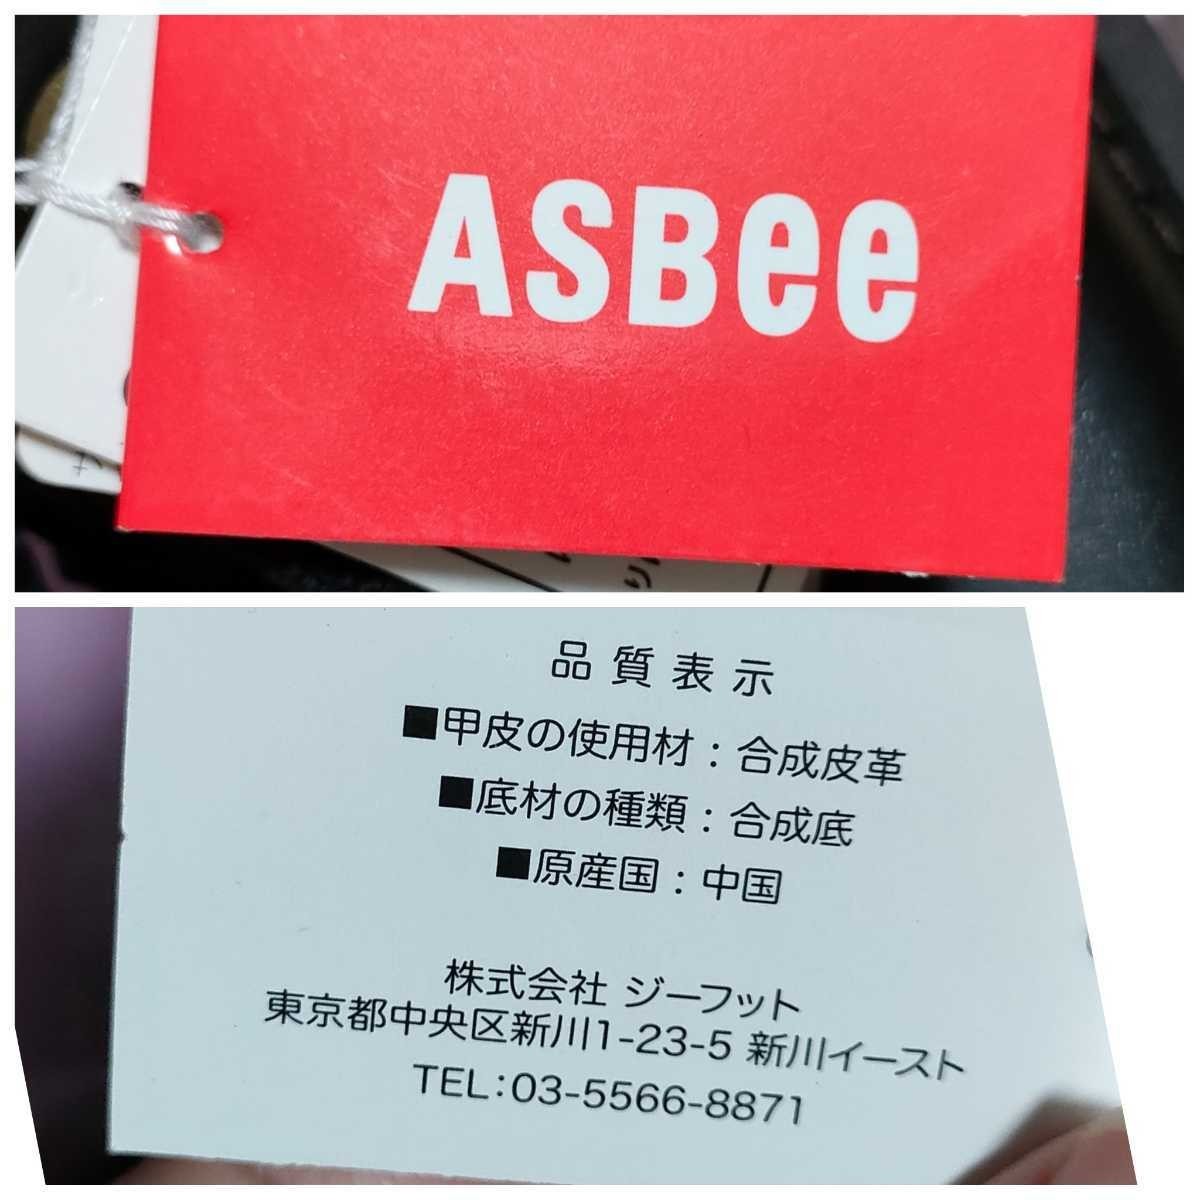 ☆【ASBee】ショートブーツ☆Mサイズ☆レディース☆新品☆難あり【150】_画像6